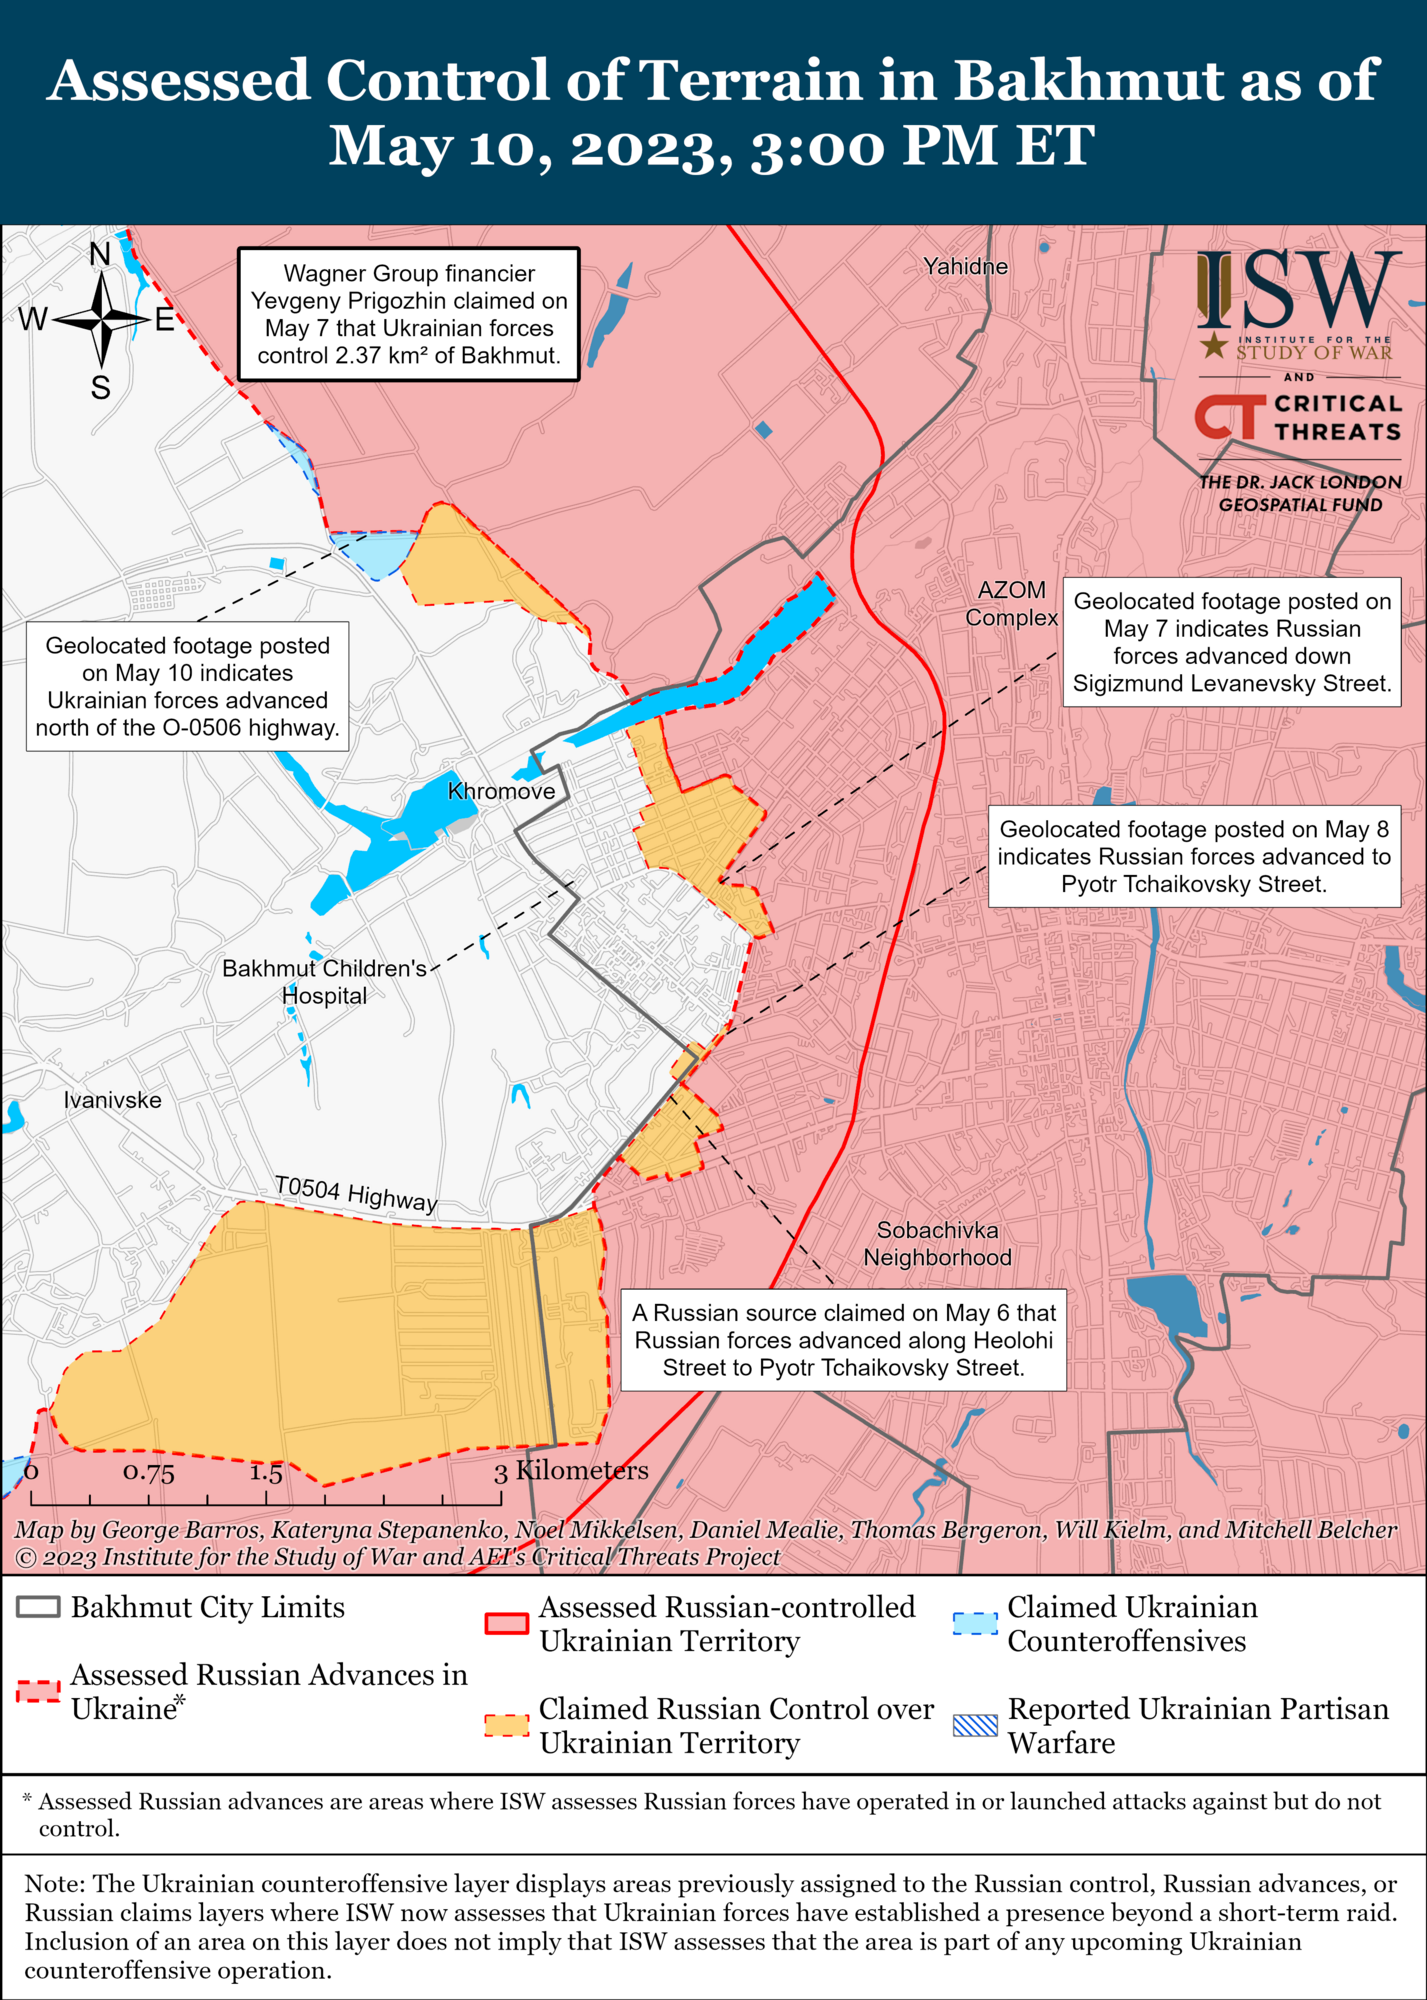 ВСУ провели успешные контратаки в районе Бахмута, у войск Путина большие проблемы – ISW